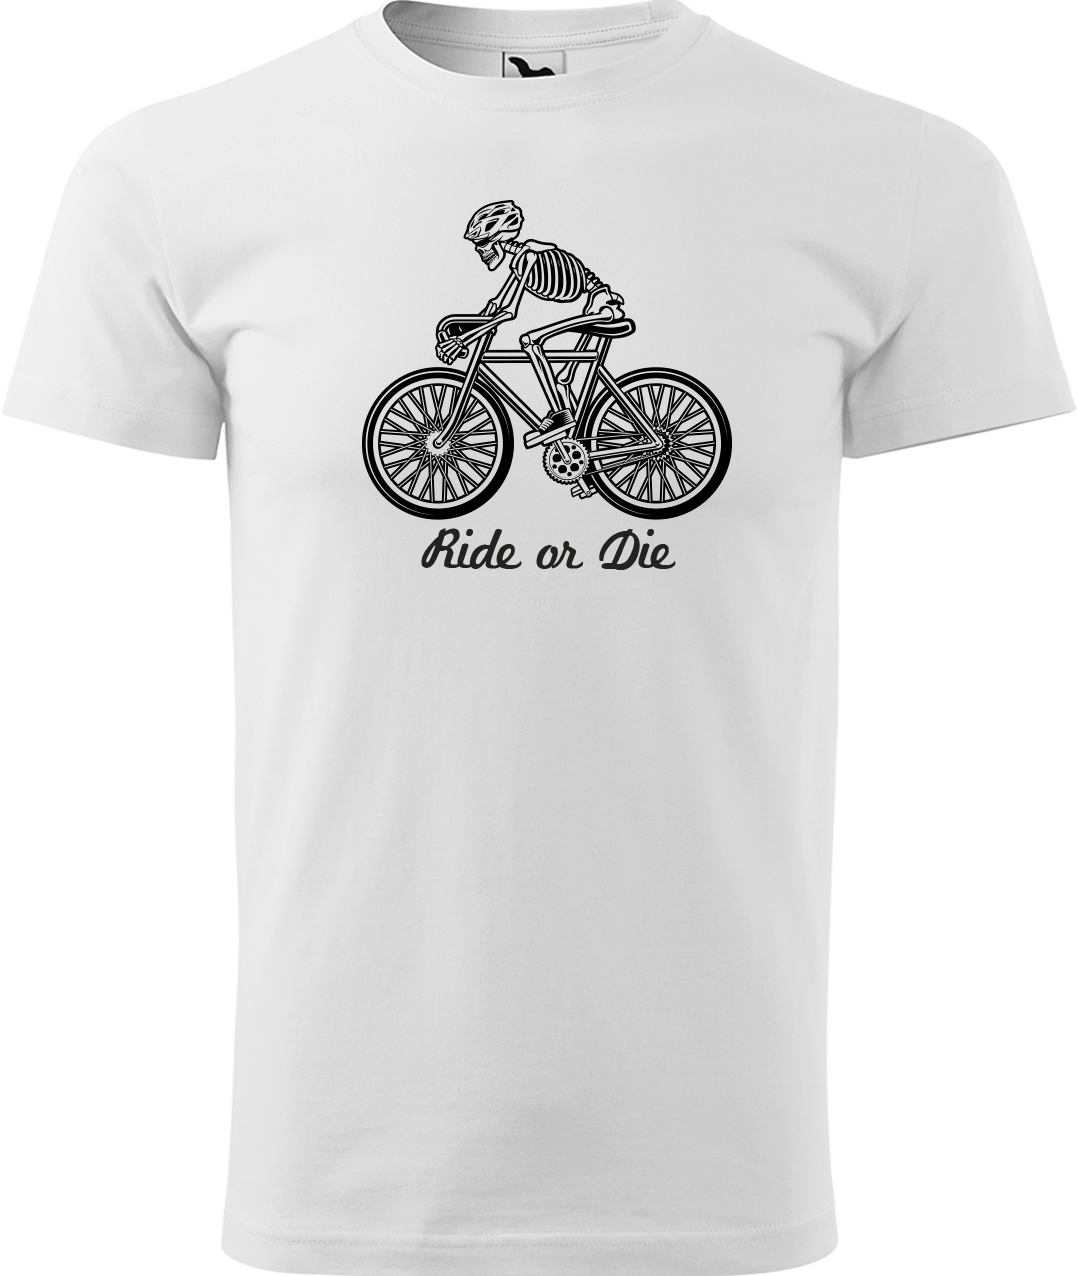 Pánské tričko pro cyklistu - Ride or Die Velikost: S, Barva: Bílá (00)